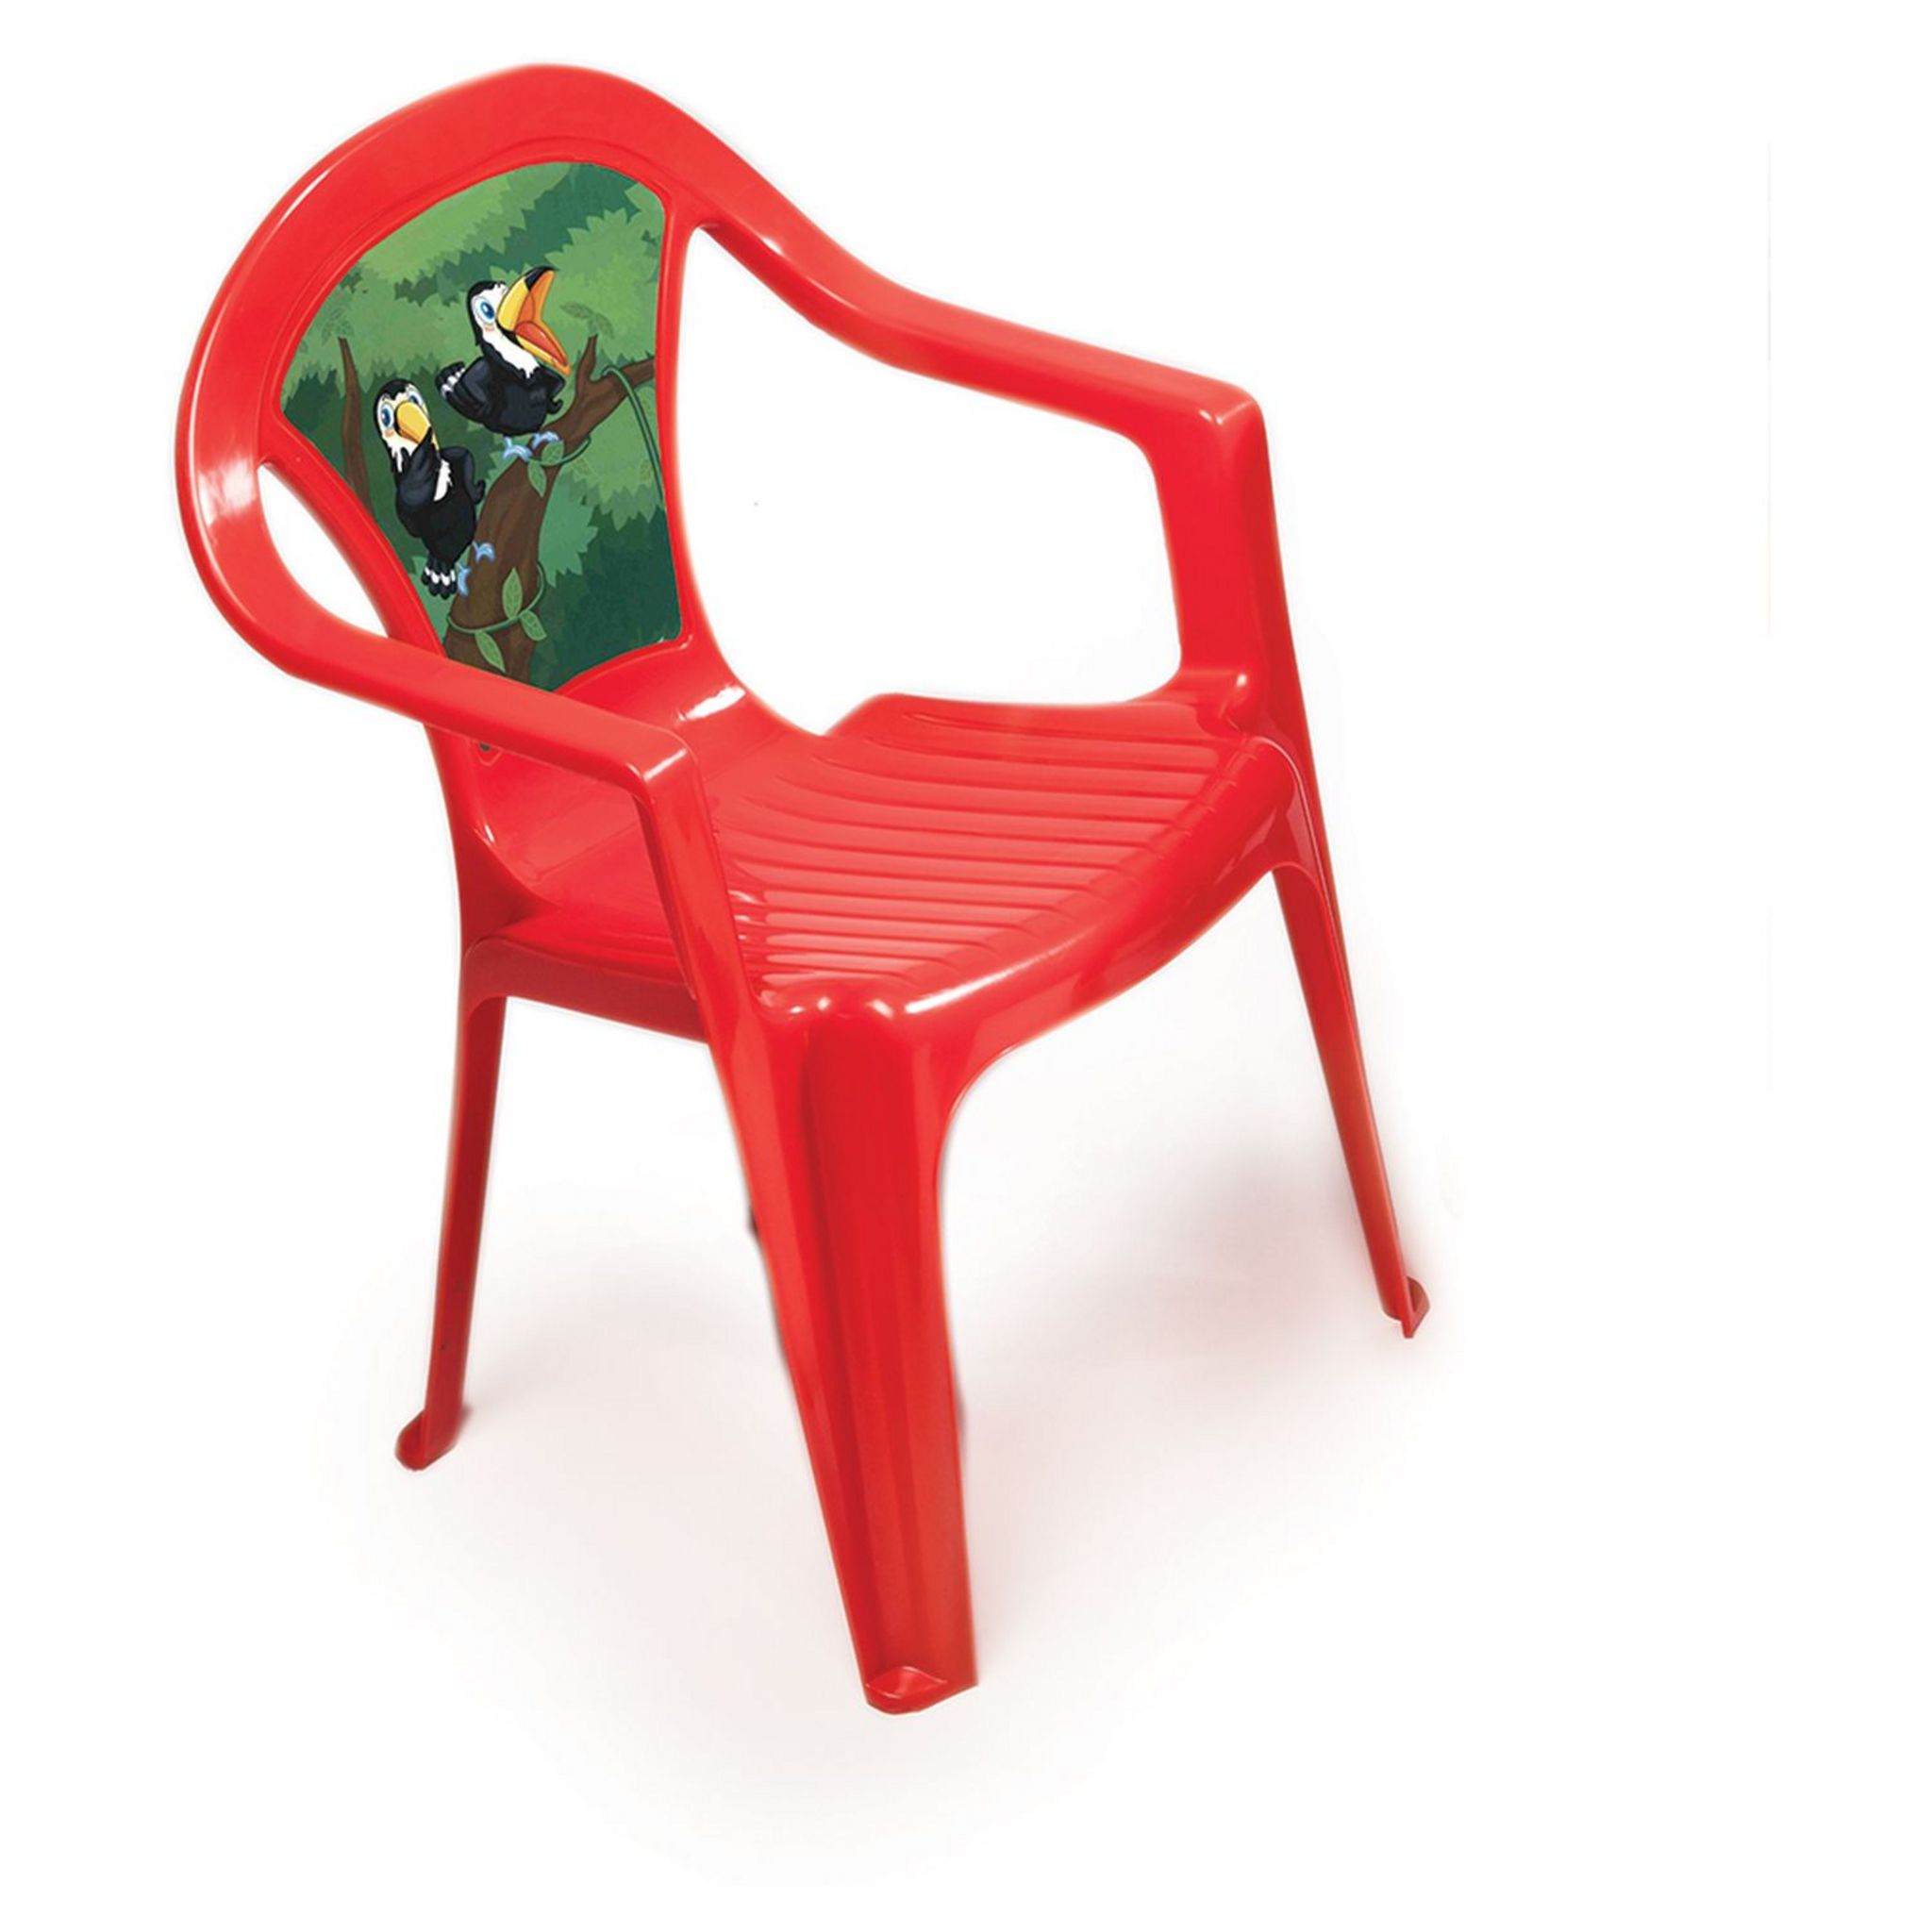 Chaise en plastique - pour jardin/extérieur - pour enfant - vert